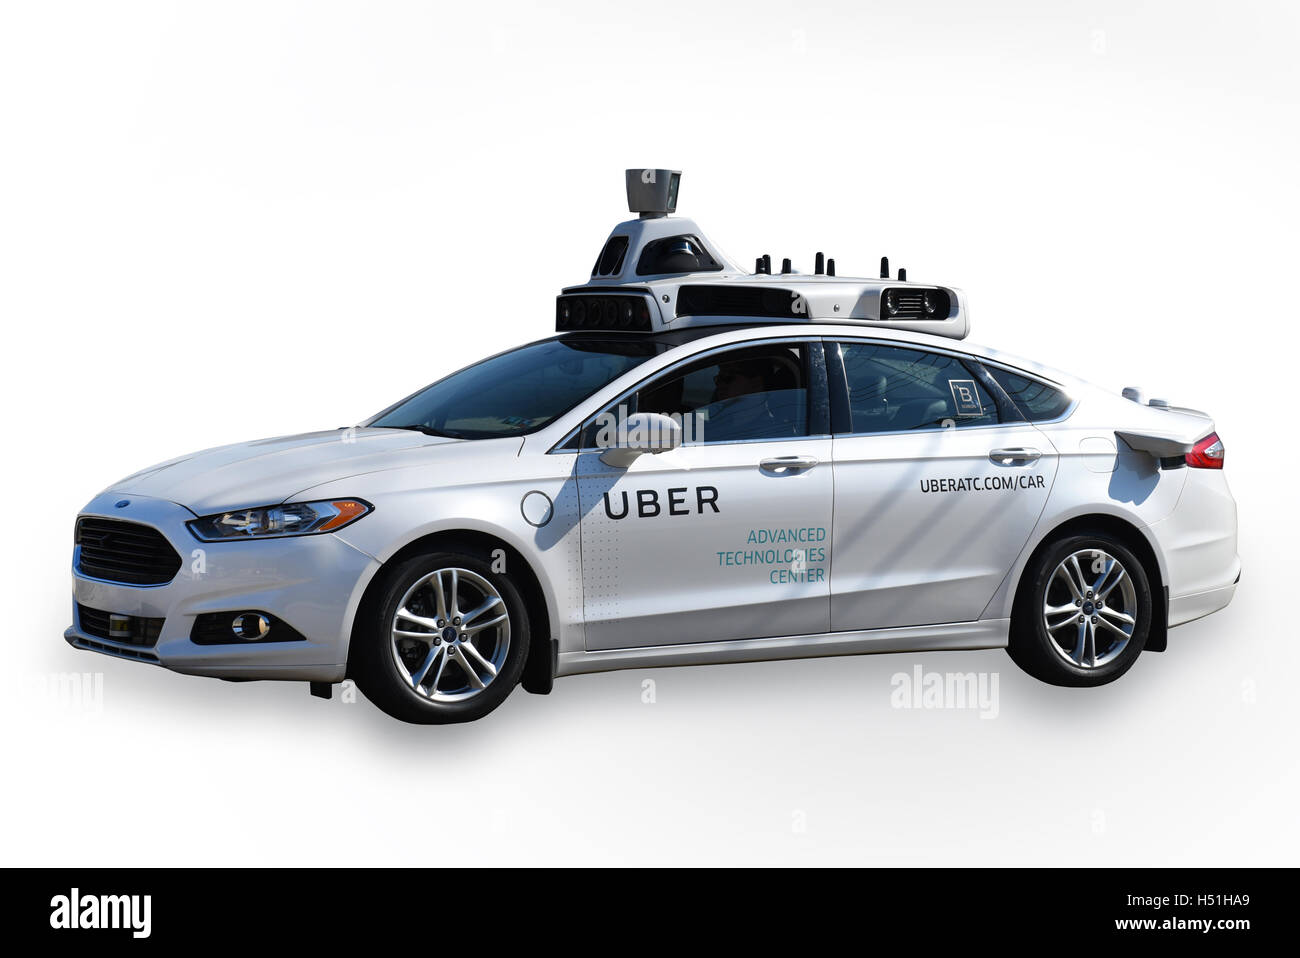 Getestet von Uber fahrerlose selbst fahren Auto Ausschneiden der Taxi-Service-Unternehmen in Pittsburgh, PA Stockfoto